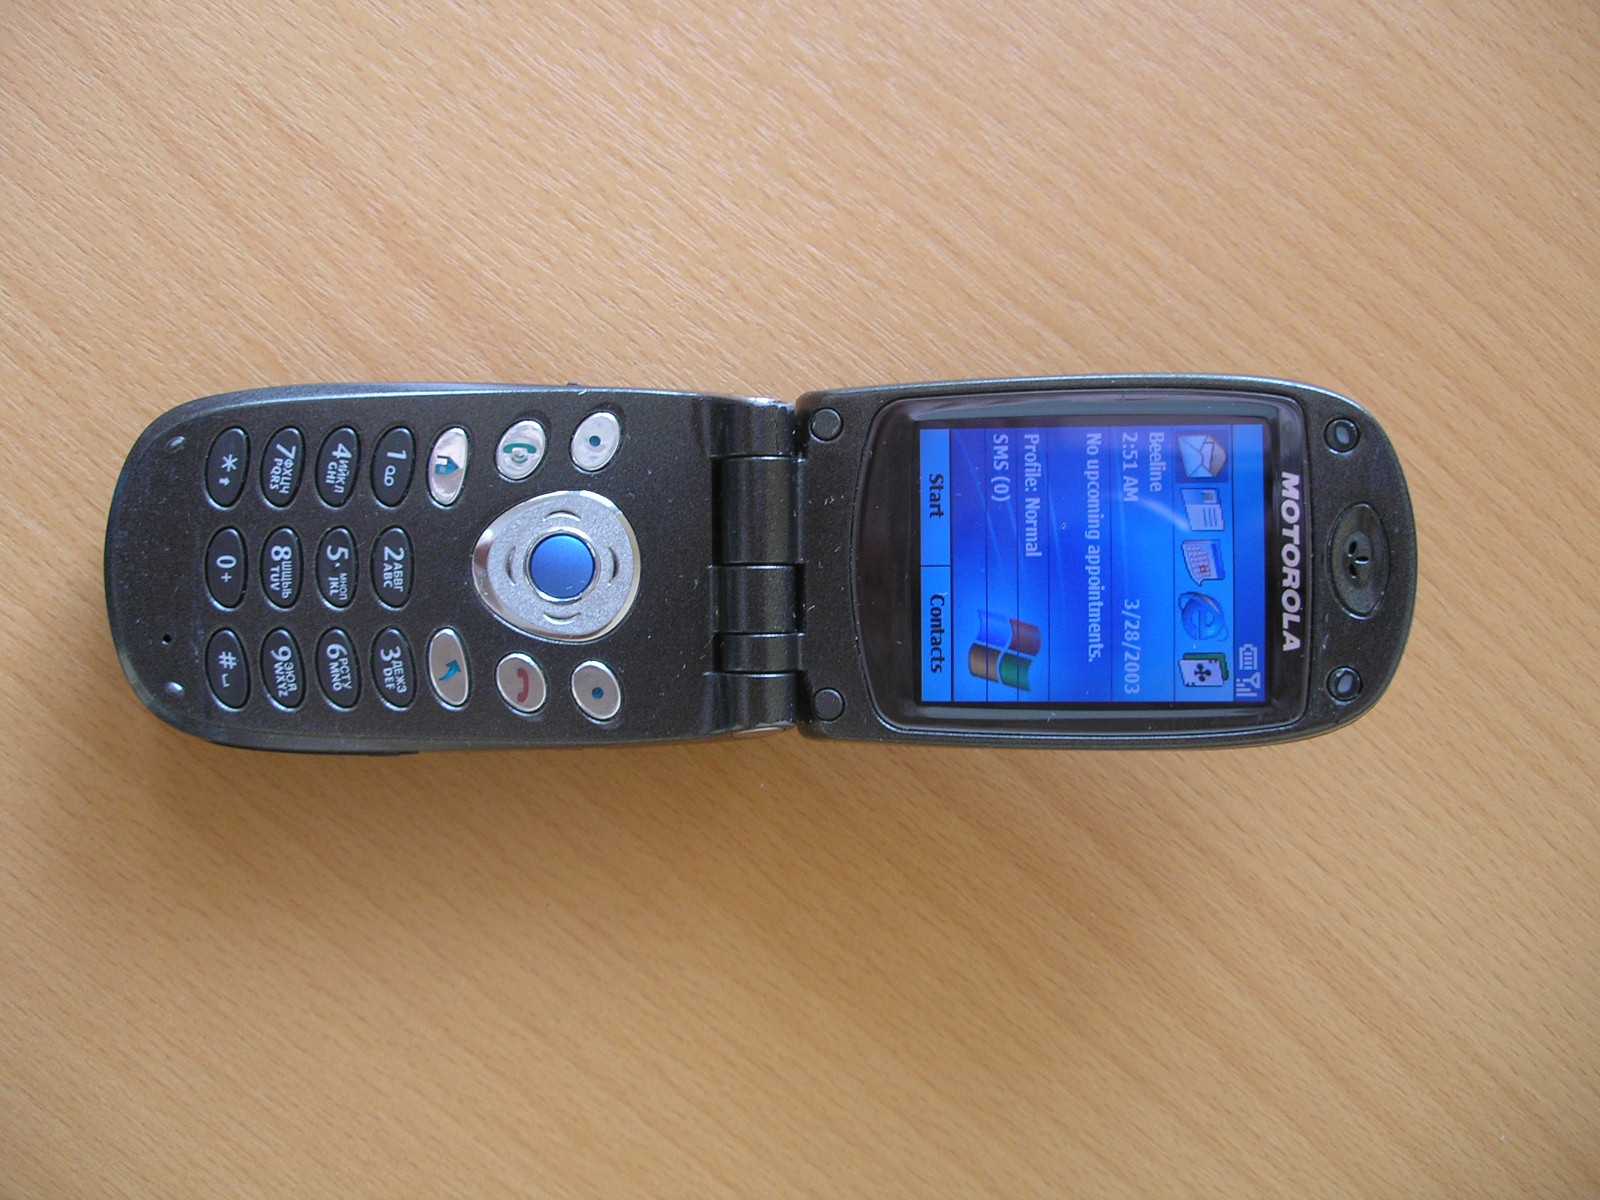 Motorola mpx200 - купить  в киев, скидки, цена, отзывы, обзор, характеристики - мобильные телефоны